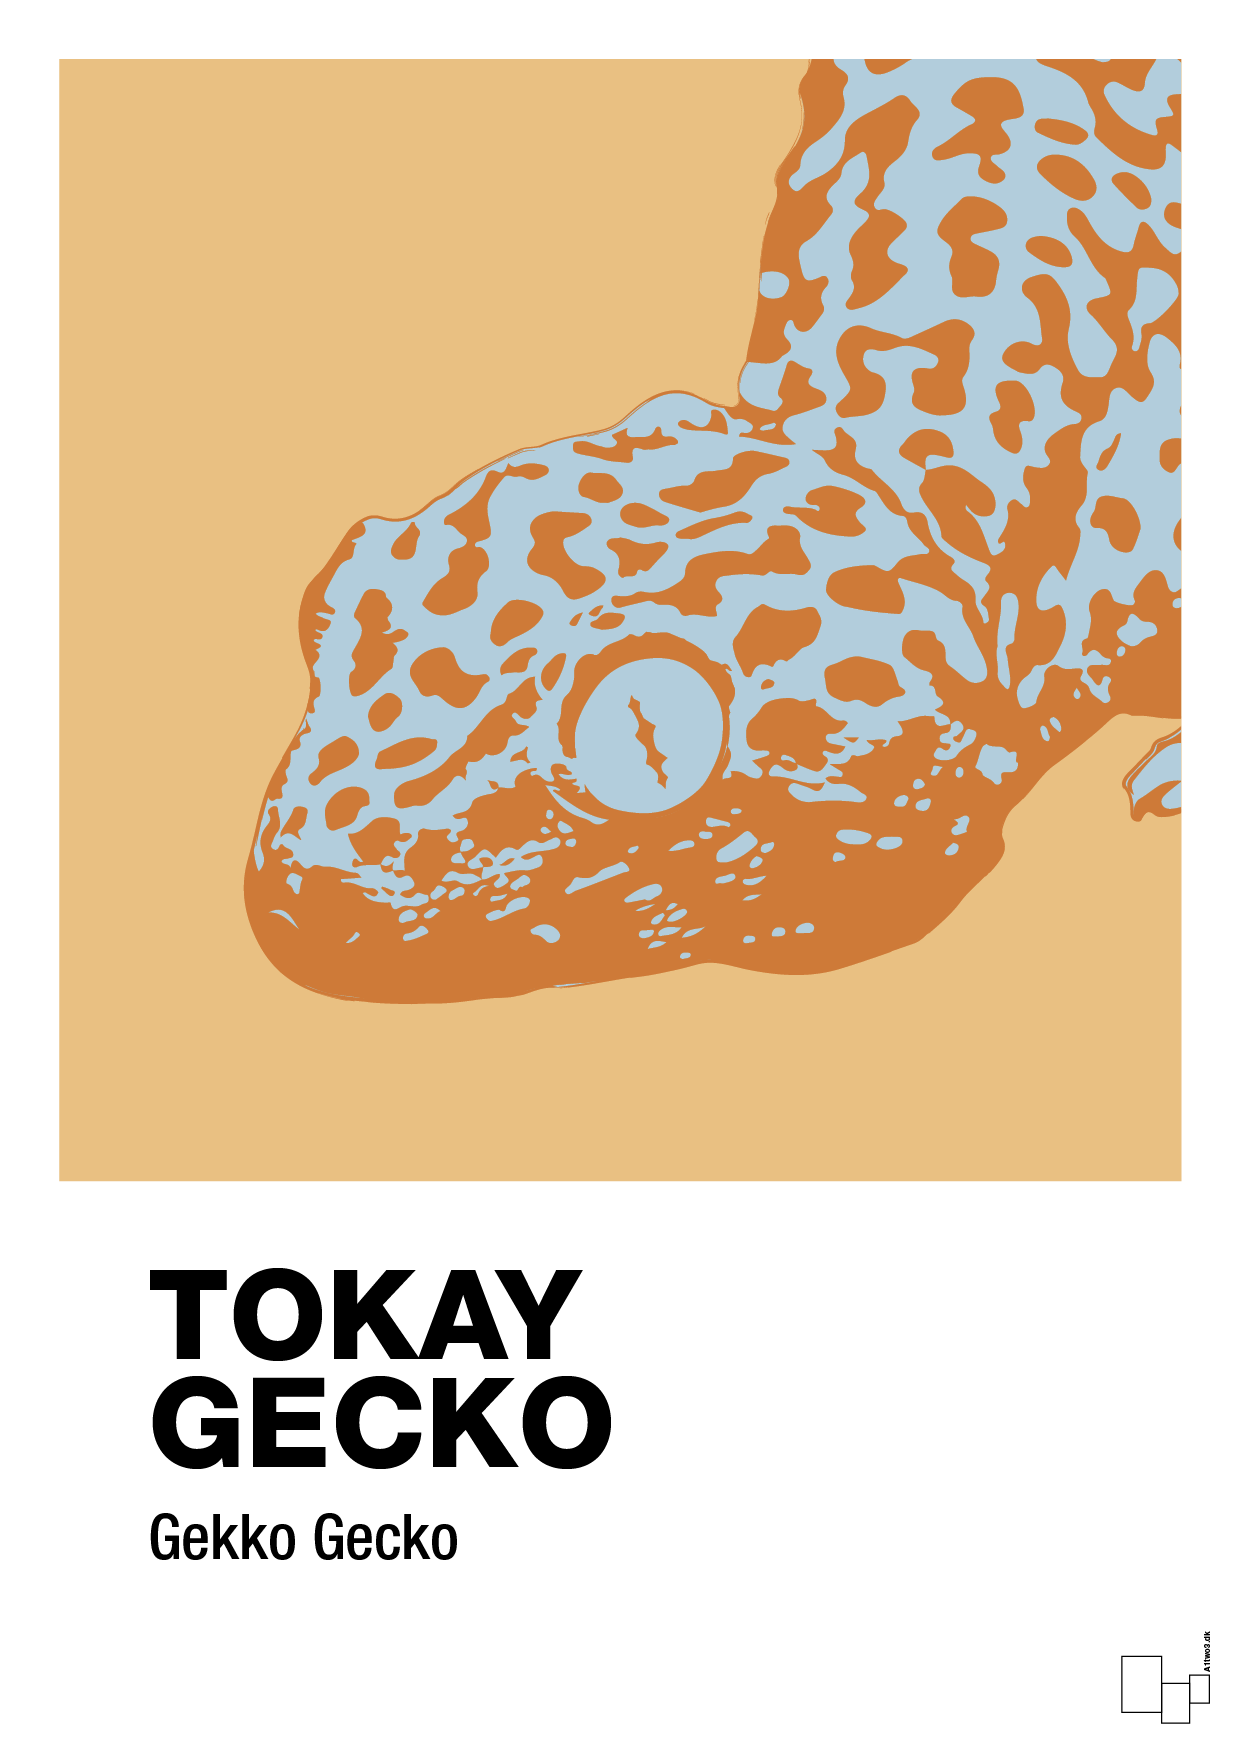 tokay gecko - Plakat med Videnskab i Charismatic